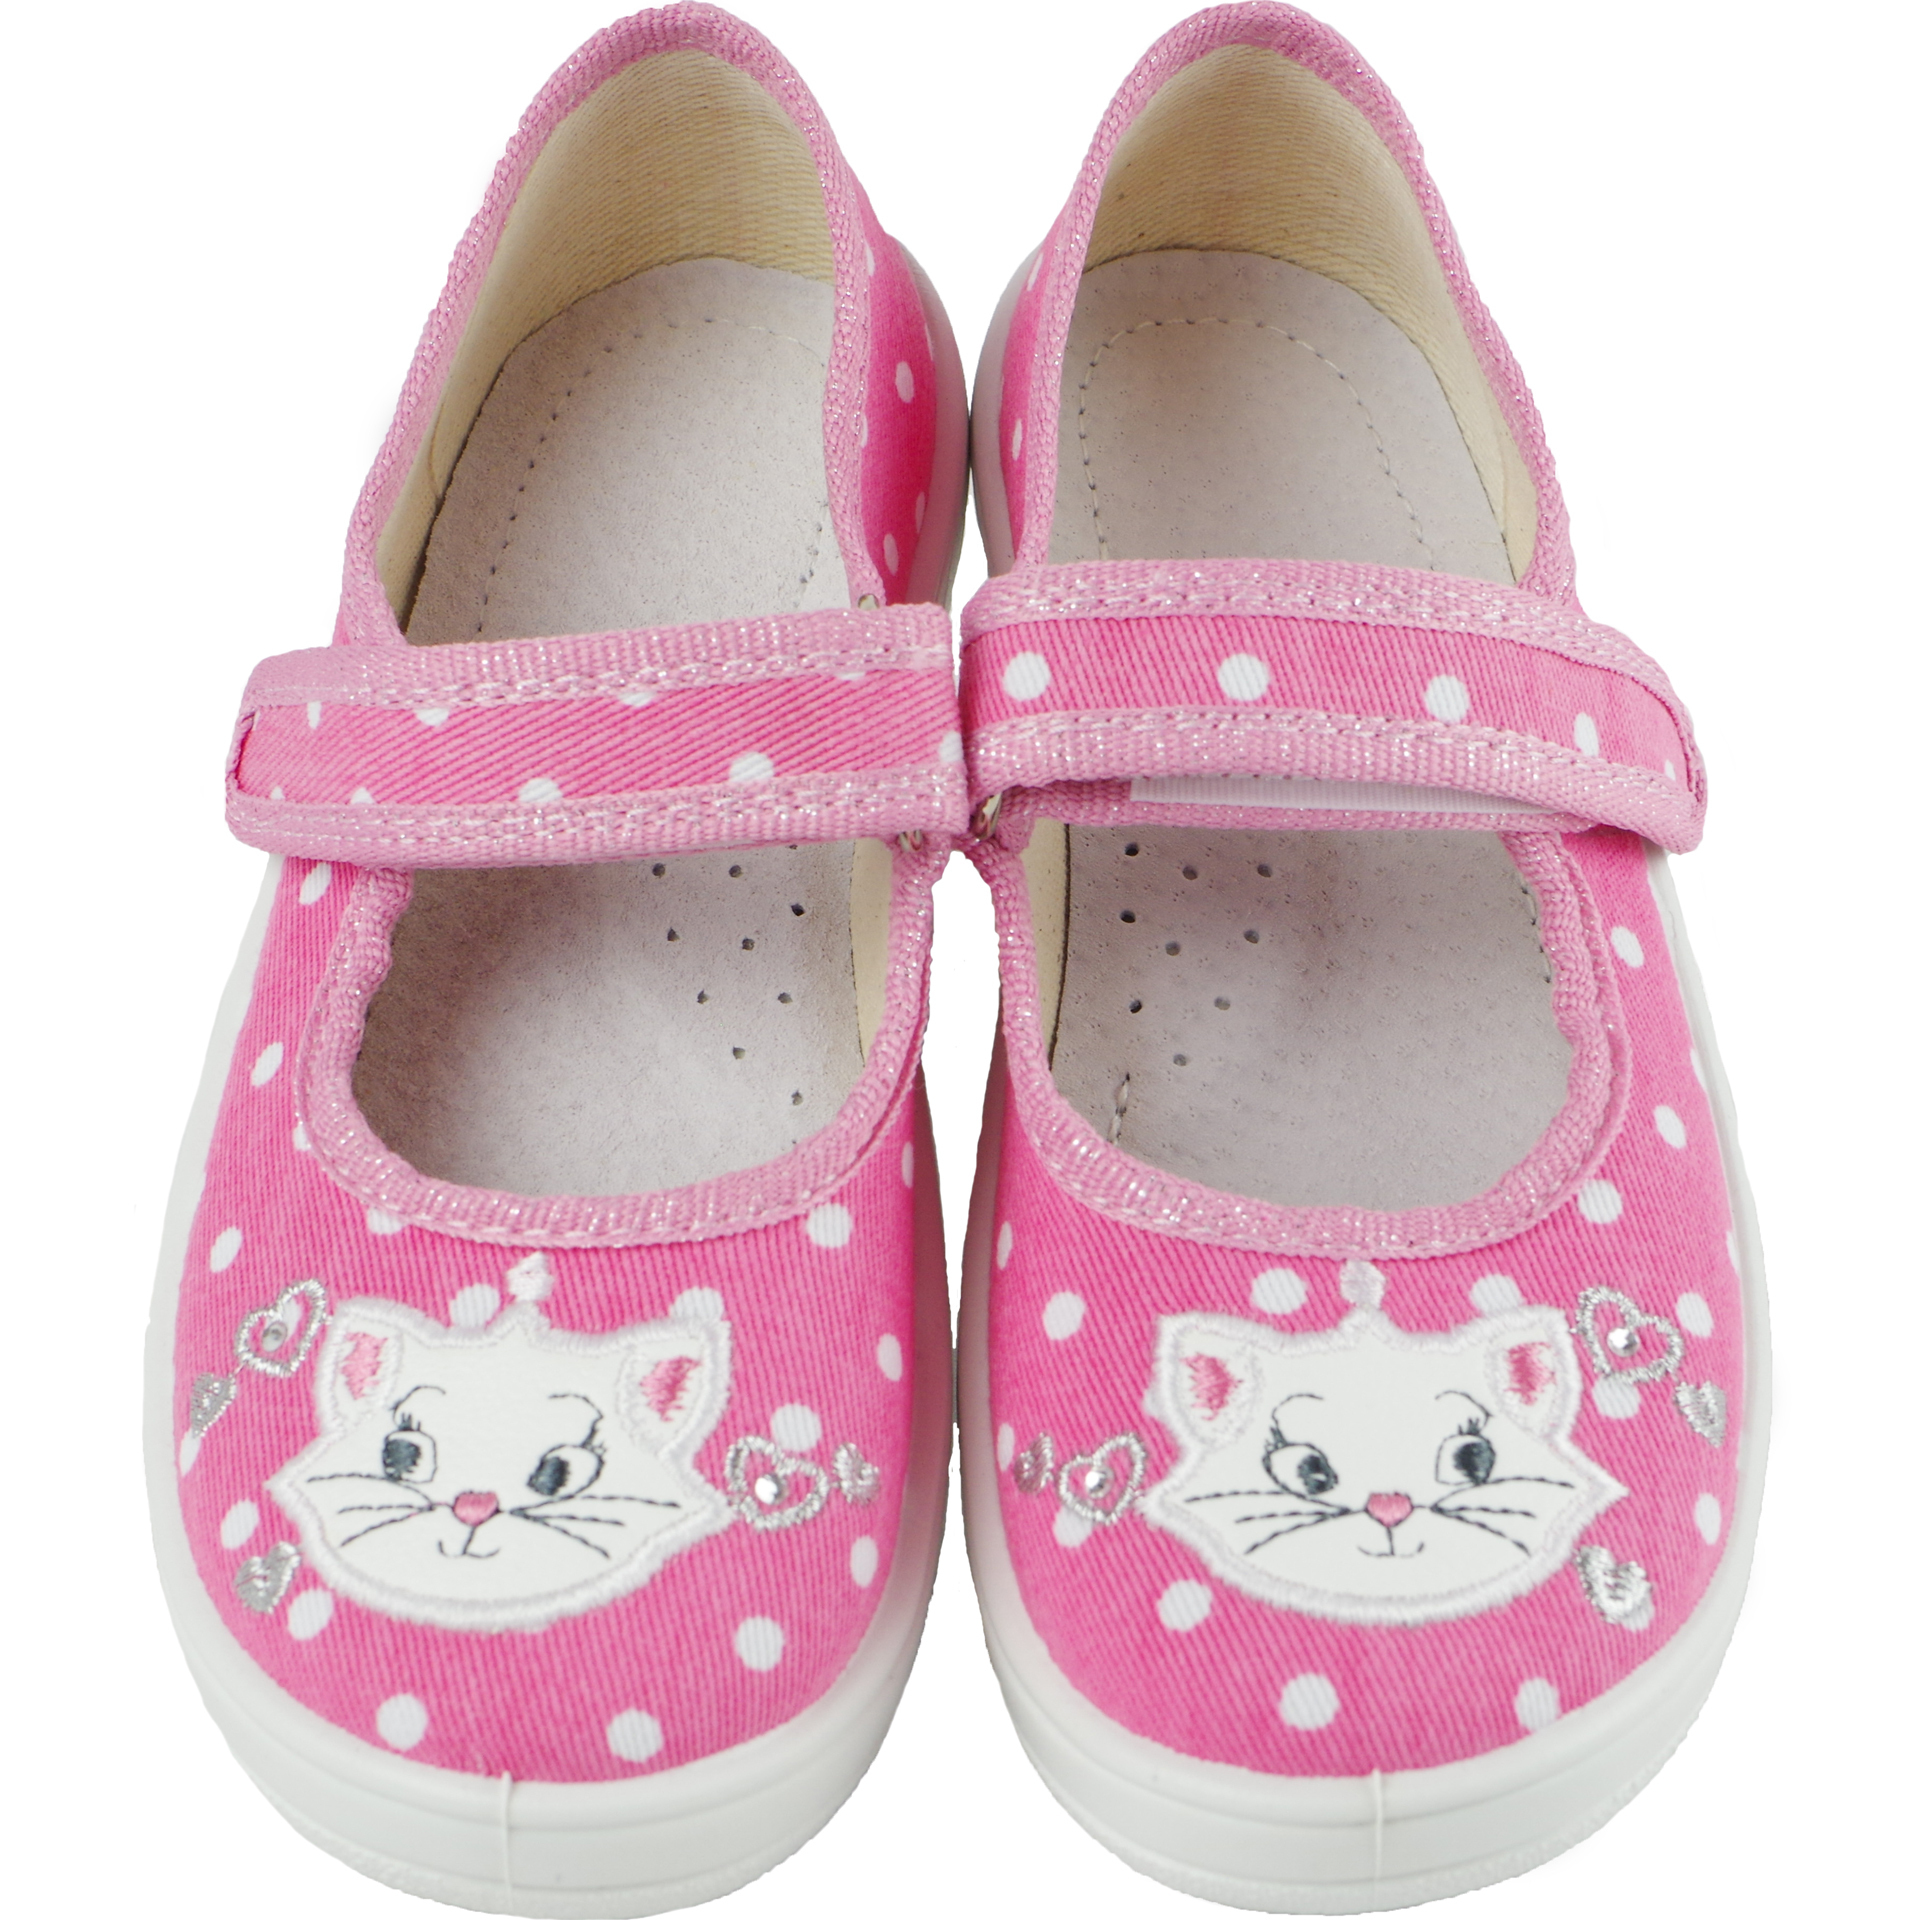 Текстильная обувь для девочек Тапочки Алина (1869) цвет Розовый 24-30 размеры – Sole Kids. Фото 4